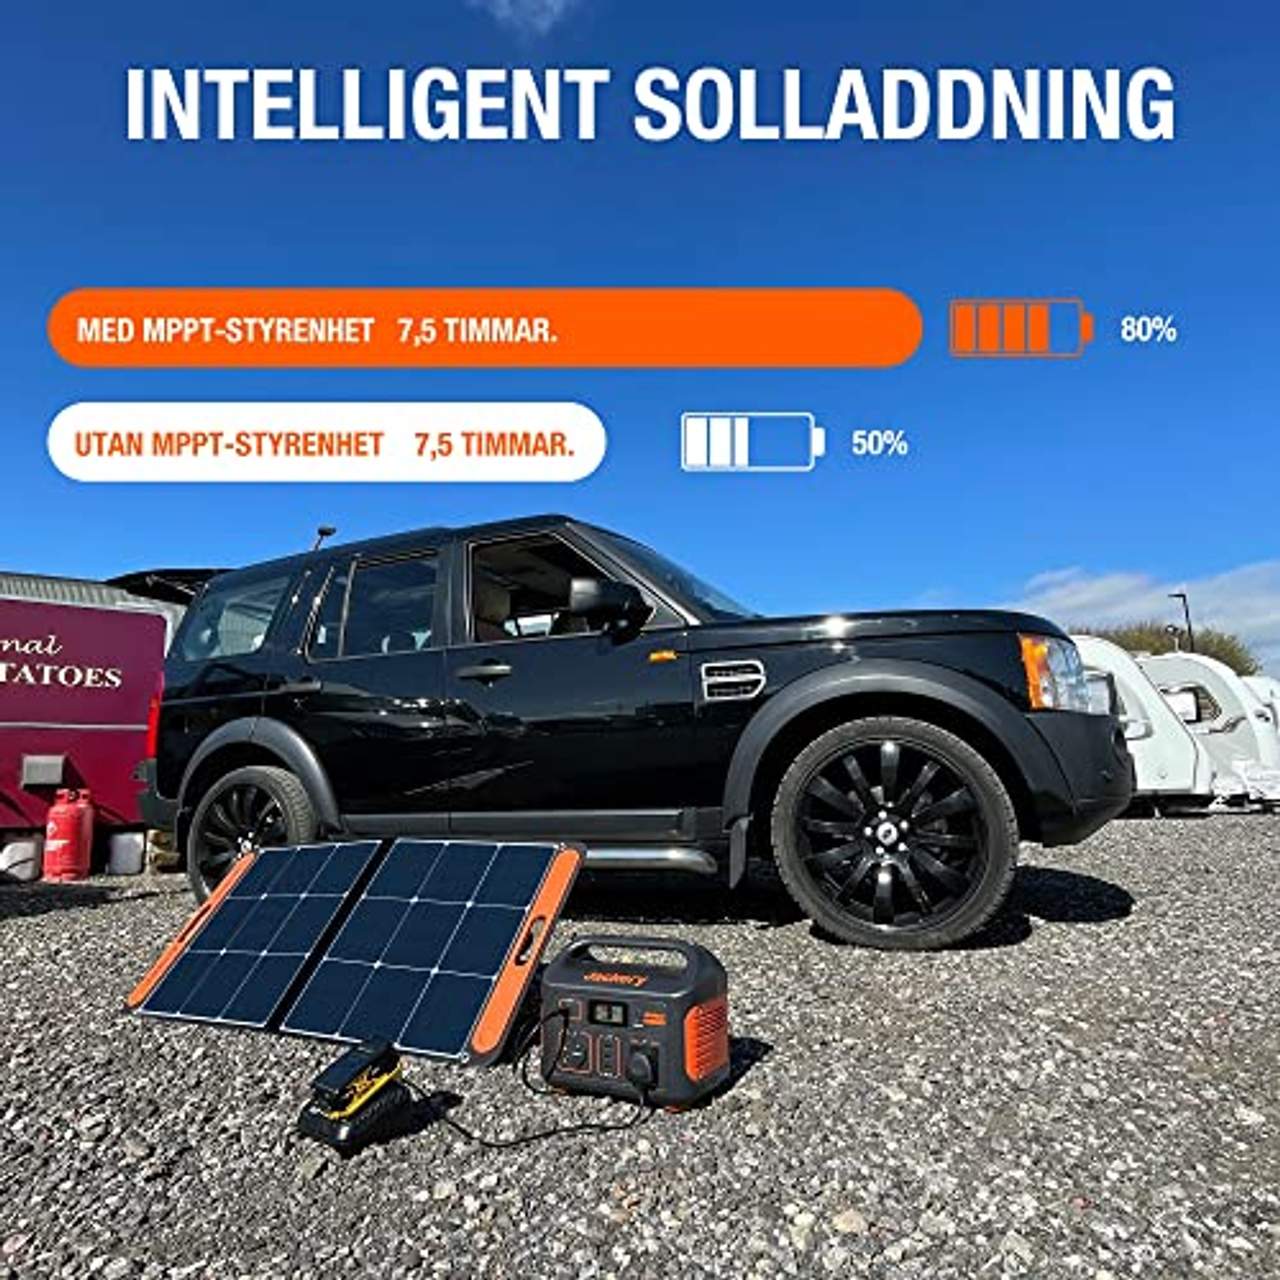 Jackery Solargenerator 500 518WH Tragbare Powerstation